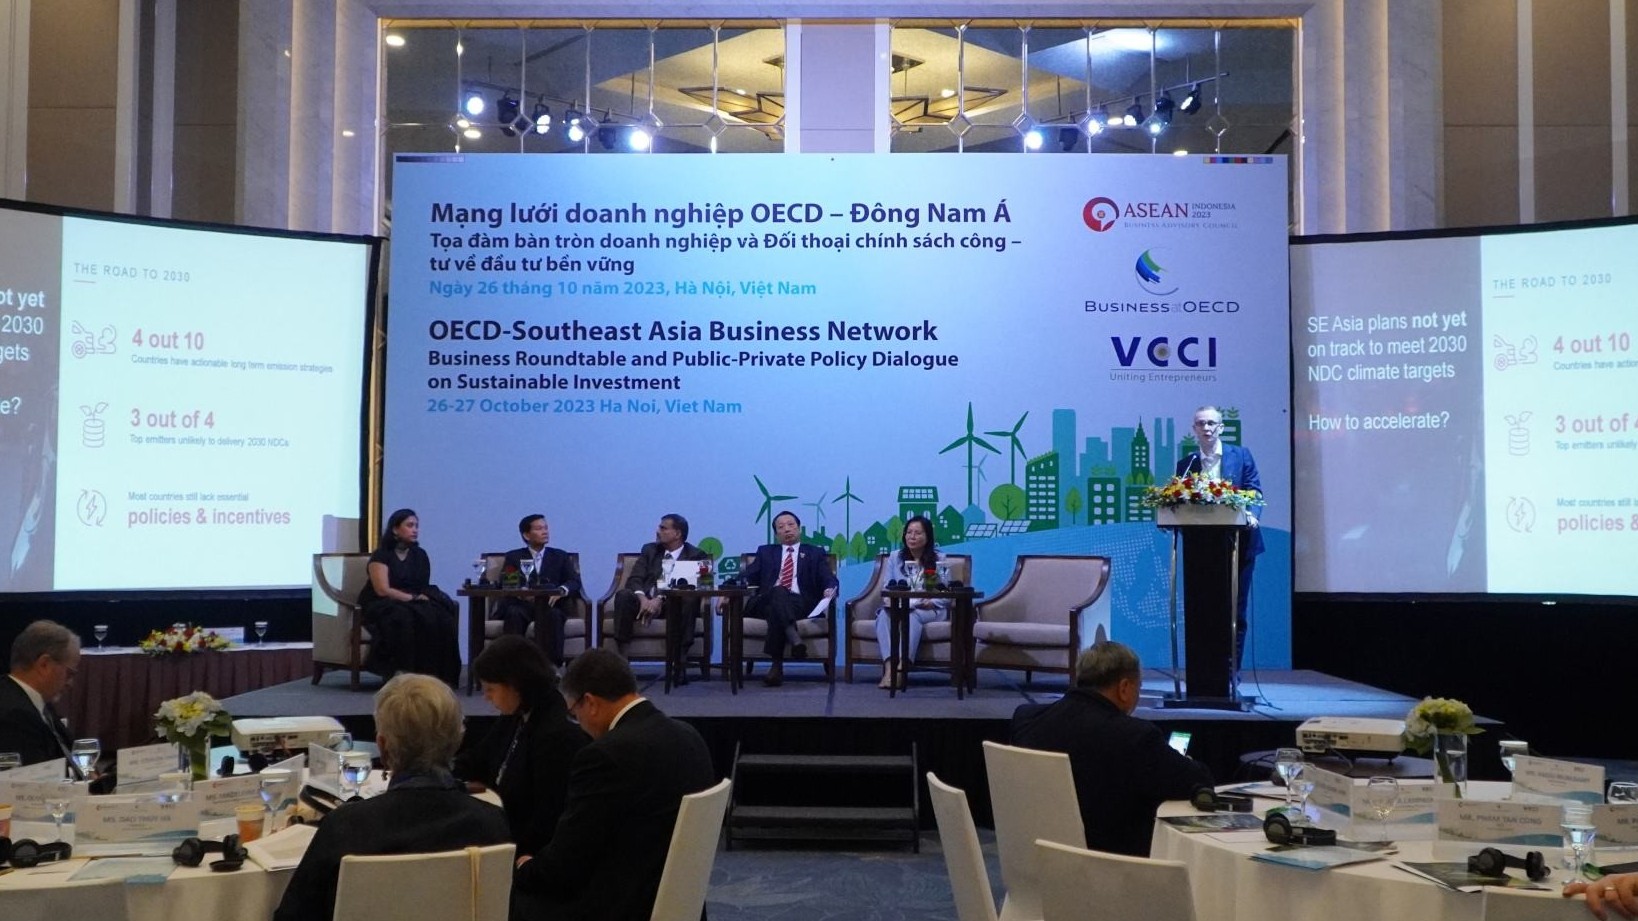 Tọa đàm bàn tròn doanh nghiệp và đối thoại chính sách công tư về đầu tư bền vững của Mạng lưới doanh nghiệp OECD-Đông Nam Á